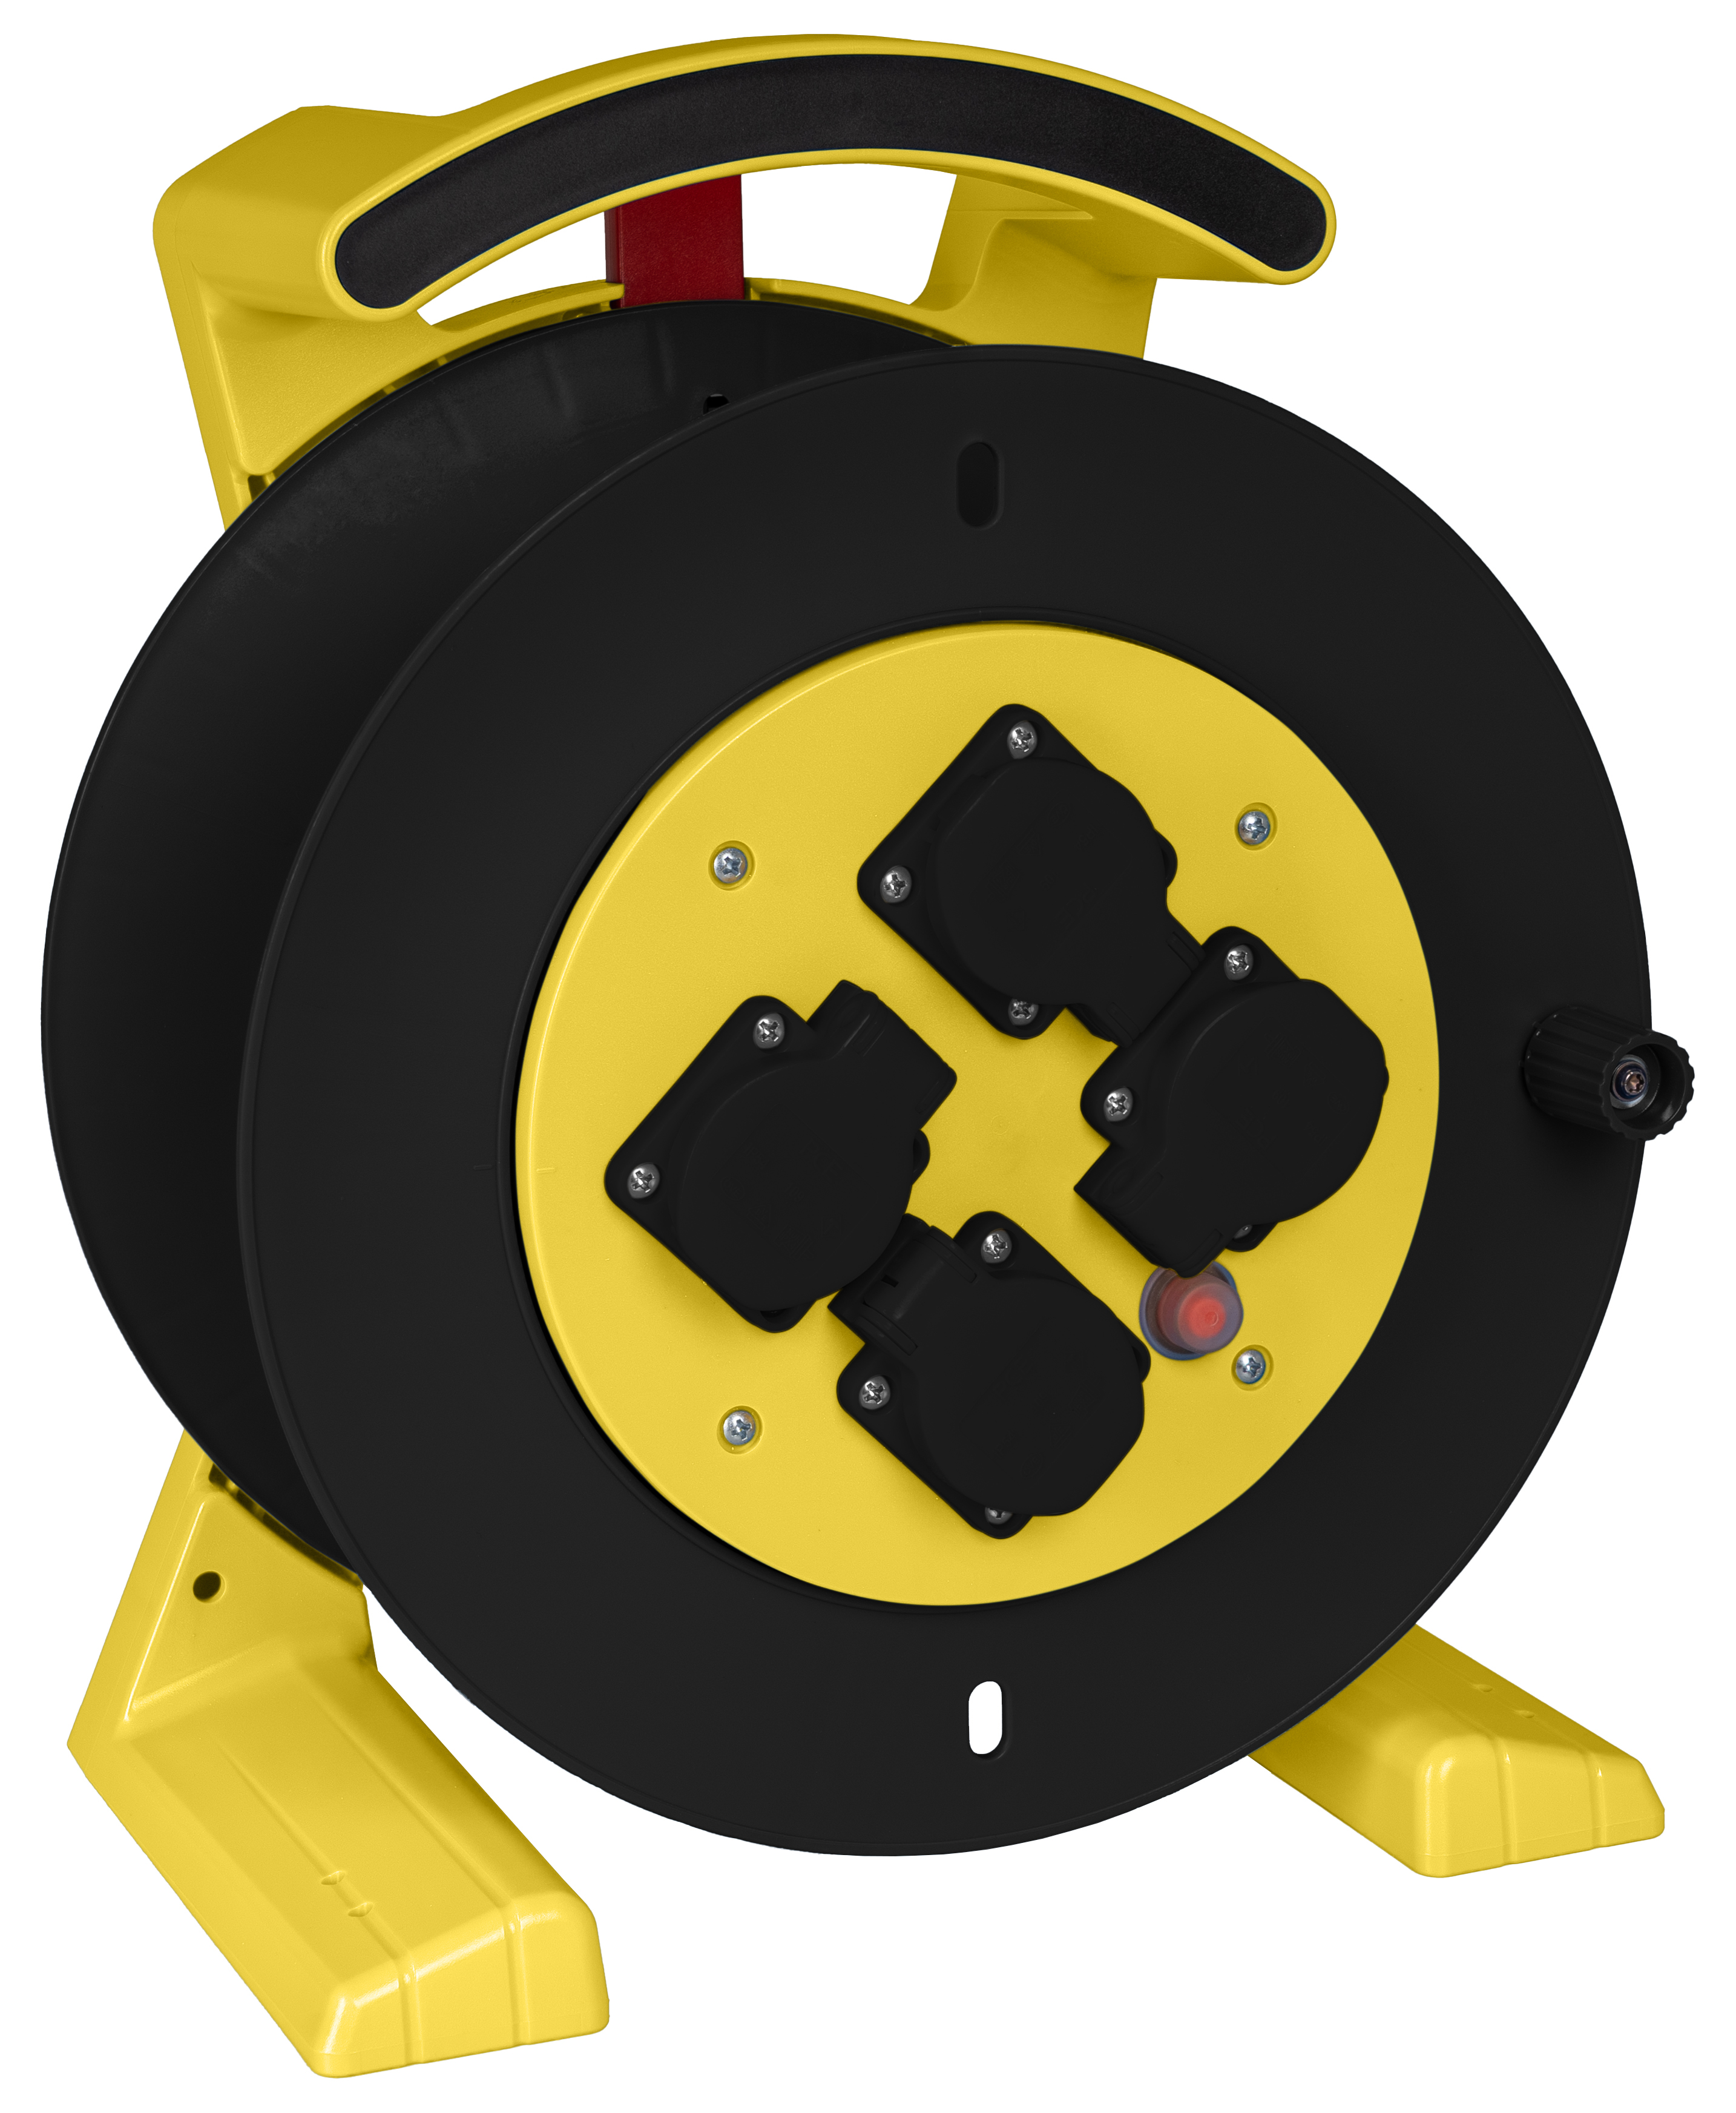 JUMBO kabelhaspel 2.0, lege trommel in geel-zwart, 4 schokbestendige contactdozen